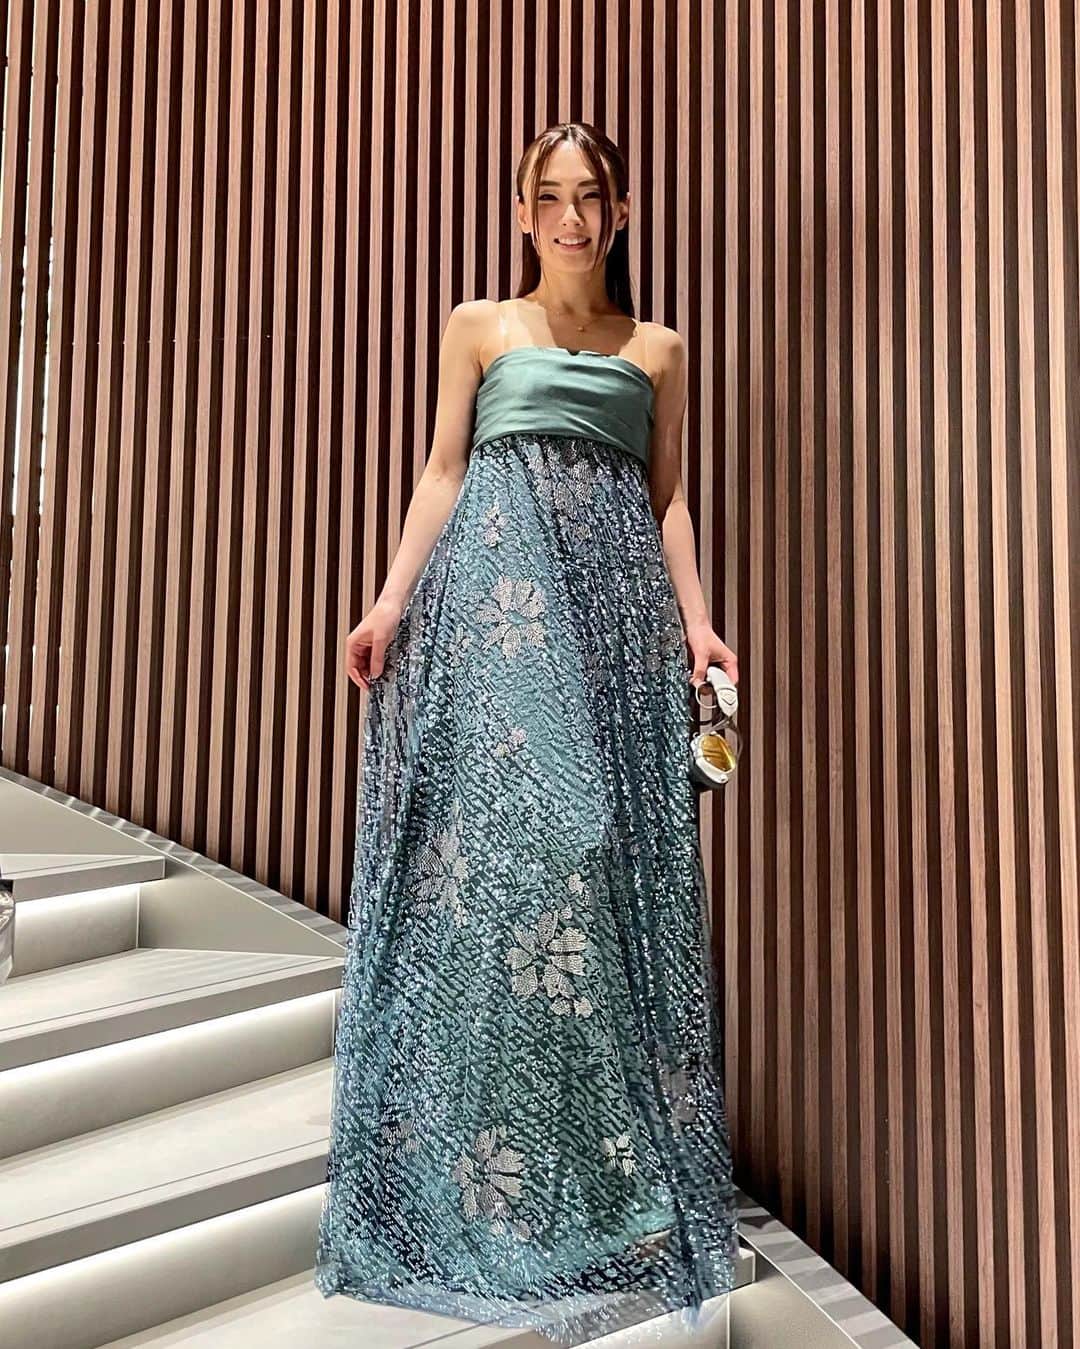 HILOCO aka neroDollのインスタグラム：「@emporioarmani @giorgioarmani Kobe grand opening🎉🥂🤍✨✨ アルマーニ神戸店が4/29より大丸横にリニューアルオープン！ reception partyでDJさせて頂きました🥰🎉  この日の衣装は Collectionの中でも特別なドレス二着👗  グリーンのイブニングドレスは 全て手作業で施された繊細な装飾が 360°どこから見ても煌めいて、 ため息レベルの美しさ…😍💎✨✨  ピンクのパンツドレスも 透け感のある生地と 立体的なビーズ装飾でとっても華やか🌸 ARMANIのピンクは 青みが入って甘くなり過ぎない絶妙ピンク🫶  長時間DJで動き回っても キラキラが一粒も取れない技術・クオリティの高さも 流石でございました😳  新店舗の場所は 大丸横ダイアモンドビルの1階  銀座タワーと同コンセプトで創られた 淡く優雅なジョルジオ・アルマーニ、 最新コンセプトの木目×アイボリーで モダンで落ち着けるエンポリオ・アルマーニの 二店舗が隣接しています  お近くの方やGW神戸にいらっしゃる方は是非、 お立ち寄りくださいね🥰  アルマーニ神戸店様、 二店舗同時リニューアルオープン おめでとうございます！🥂🎉✨✨  #EmporioArmani #EmporioArmaniKobe #2023ss」